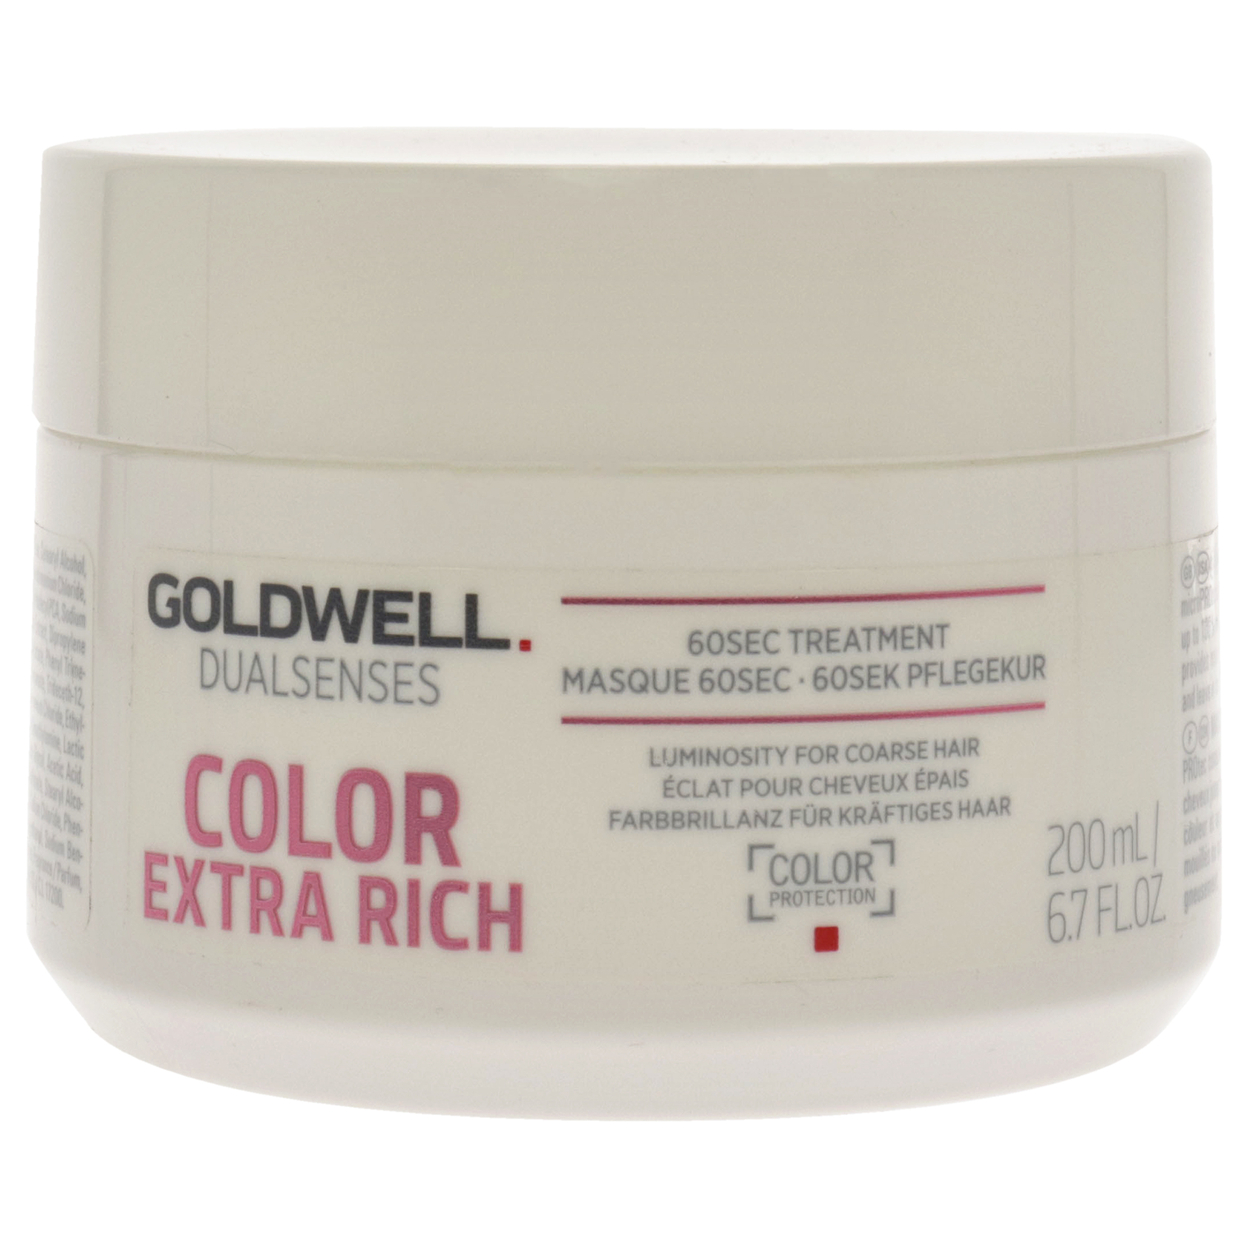 Goldwell Dualsenses Color Extra Rich 60Sec Treatment 6.7 Oz